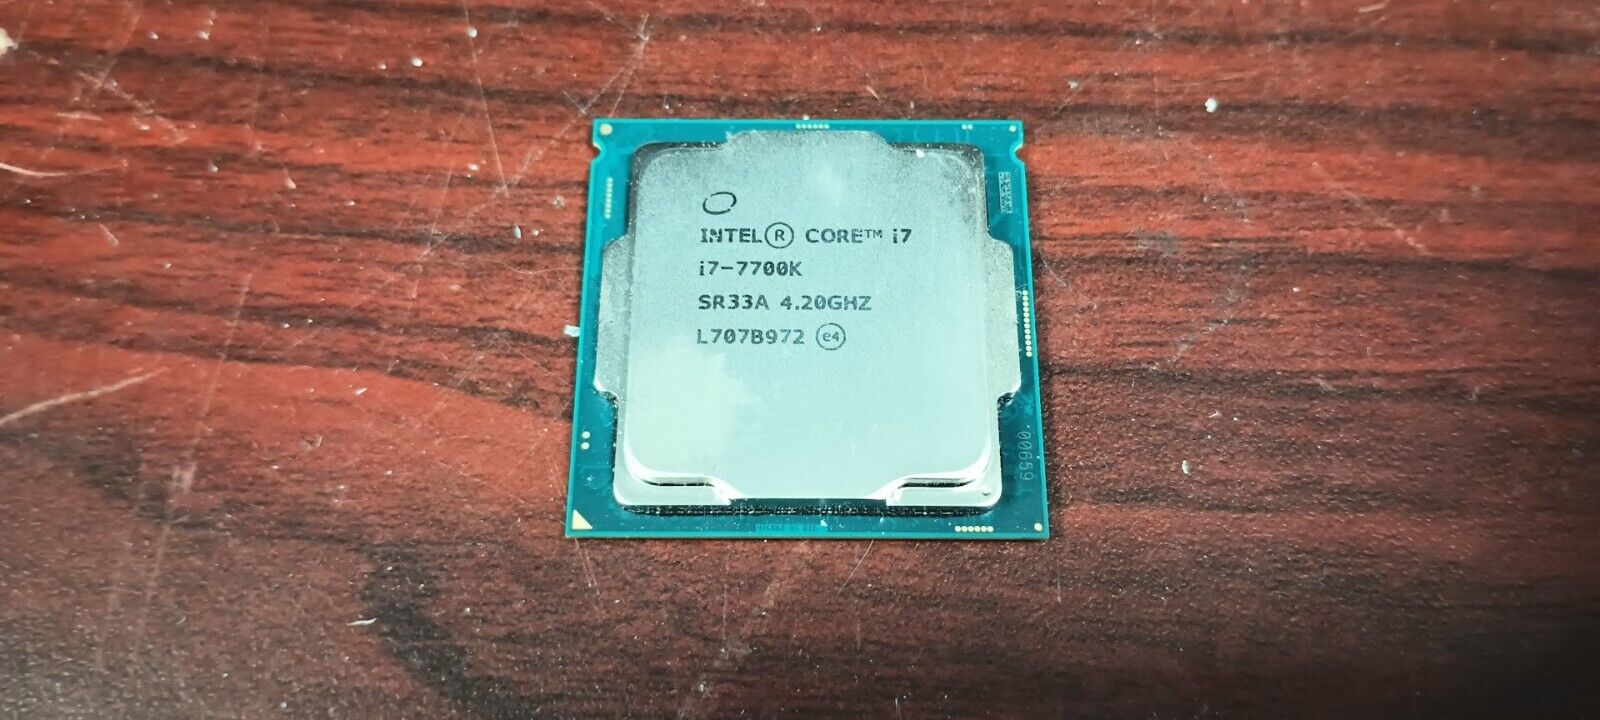 Intel Core i7-7700K CPU 4.20GHz - LGA 1151 Quad-Core SR33A Processor #95